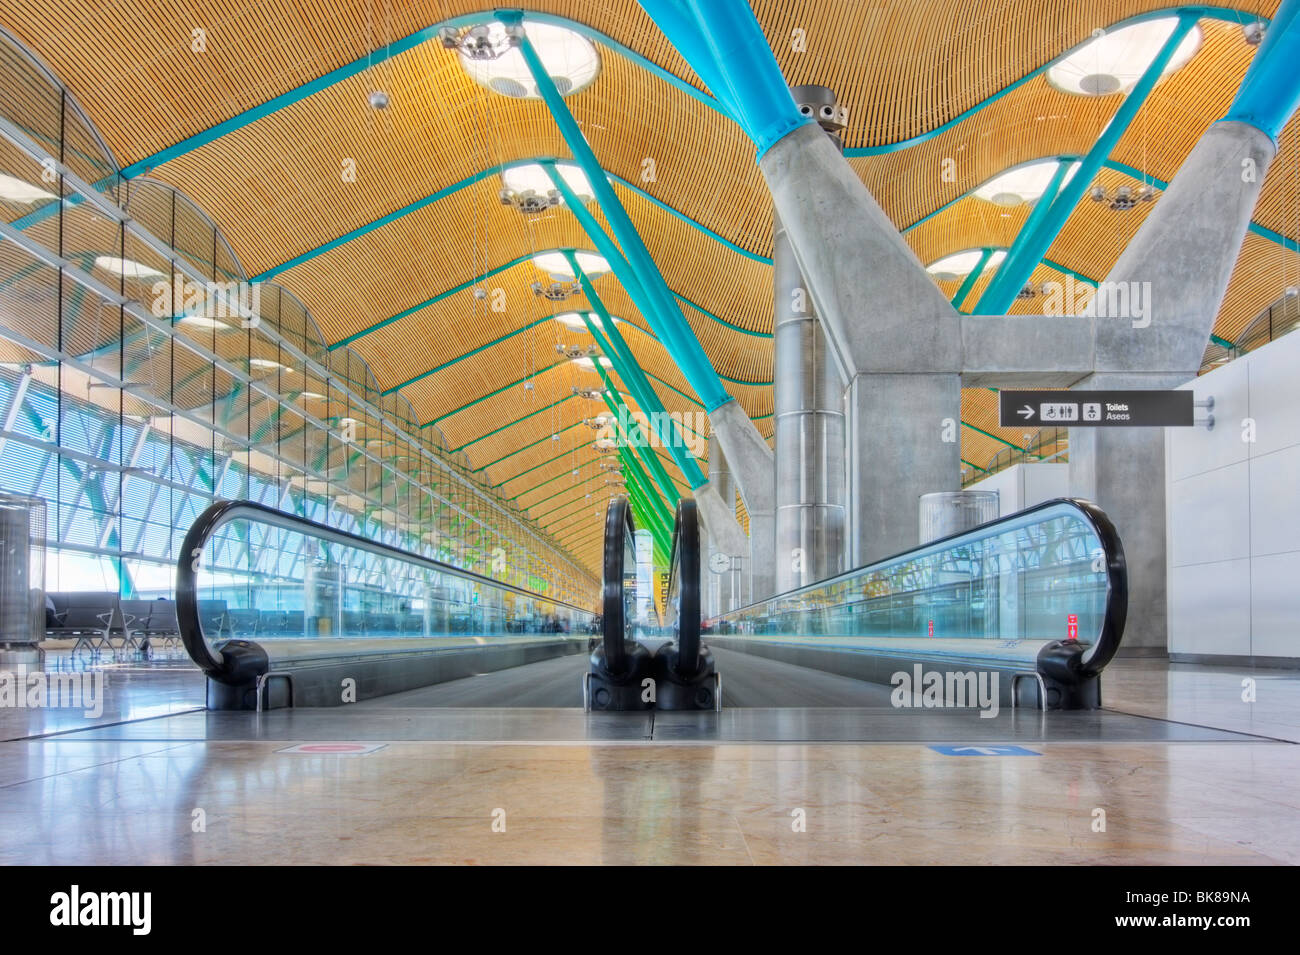 Gehweg in Abfahrt Halle - Flughafen Madrid Barajas - HDR-Bild Stockfoto